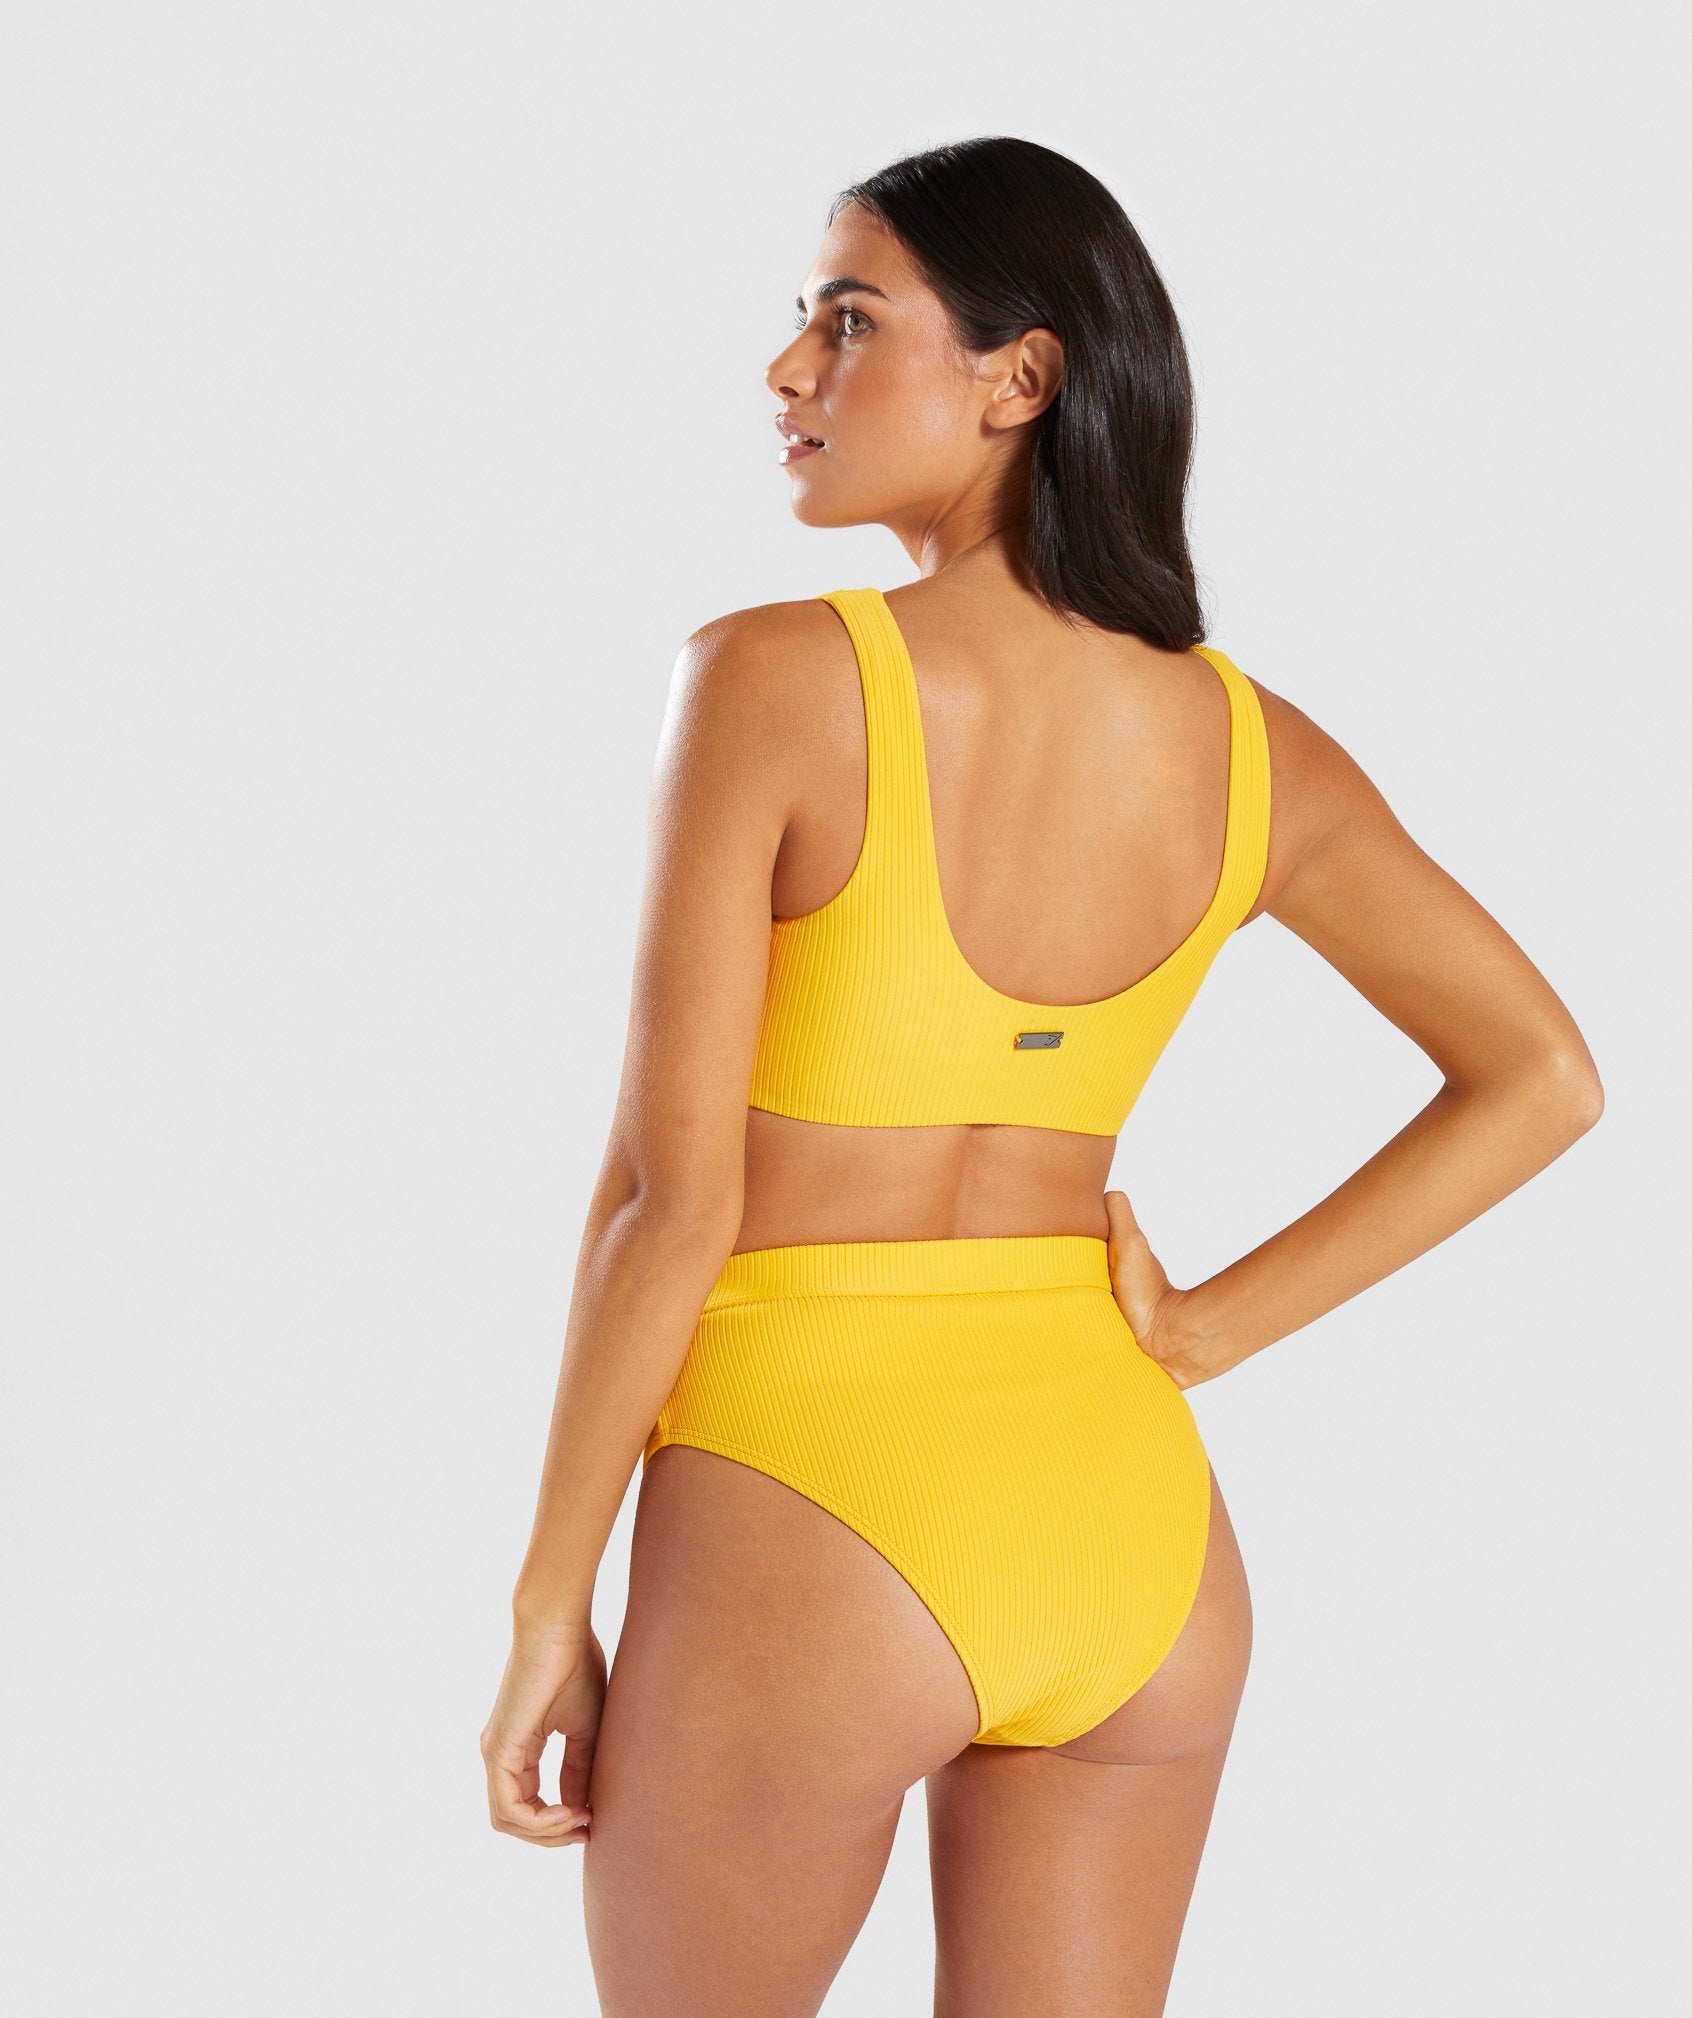 Essence Bikini Top in Citrus Yellow - view 2